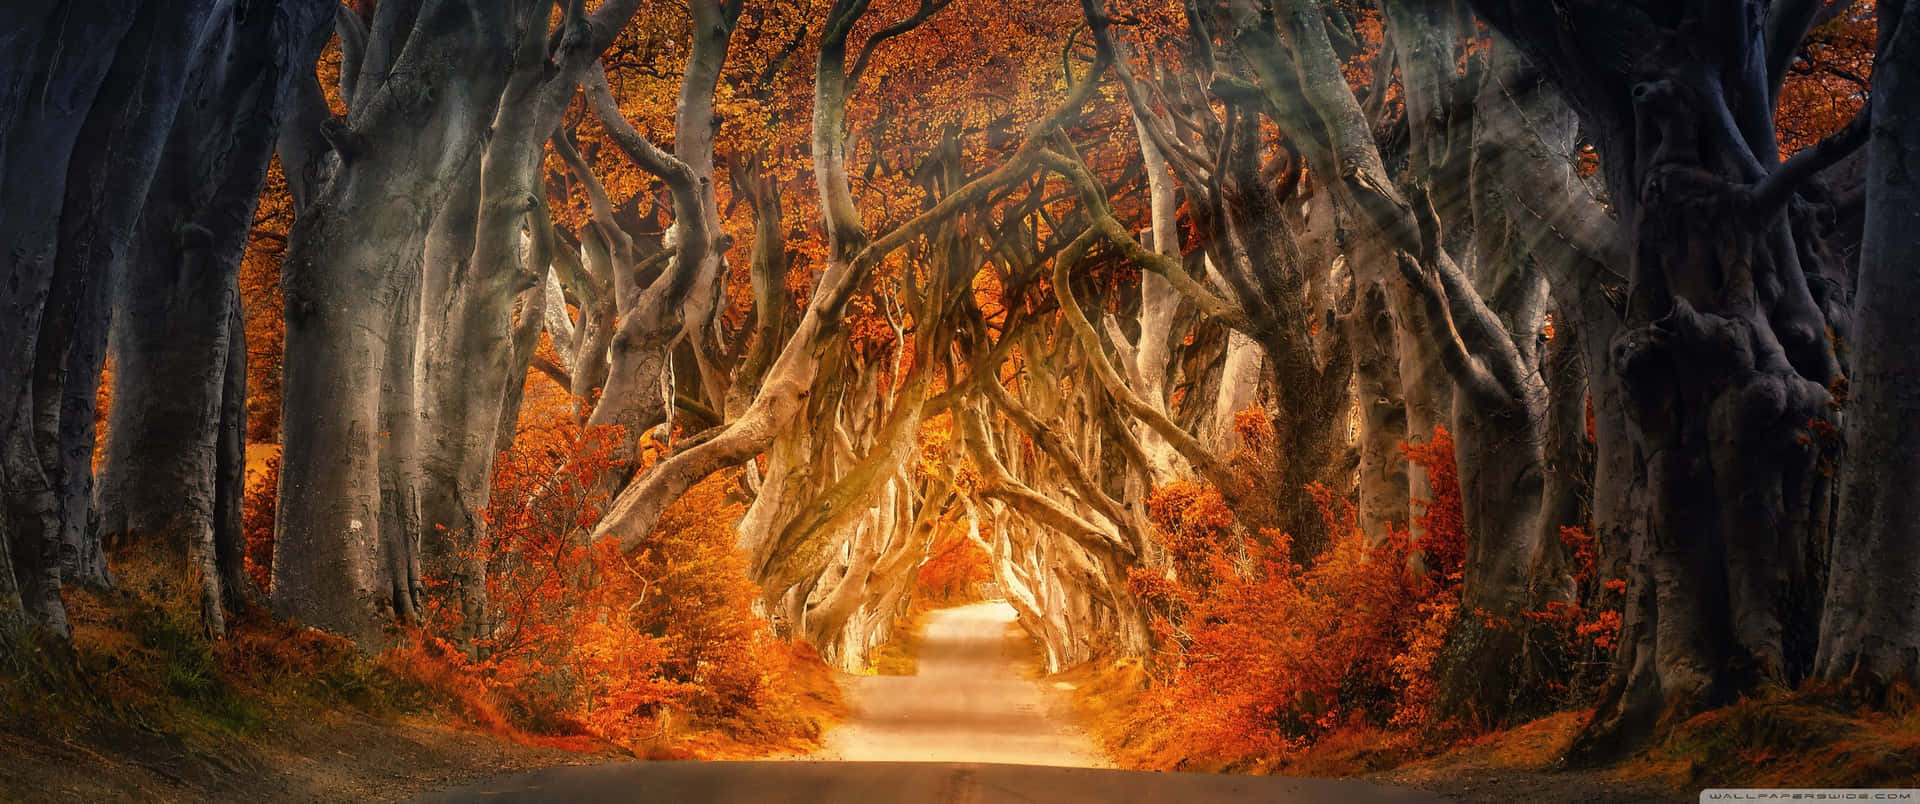 Einmosaik Aus Blättern Heißt Den Herbst Willkommen In Einem Kaleidoskop Warmer Farben. Wallpaper